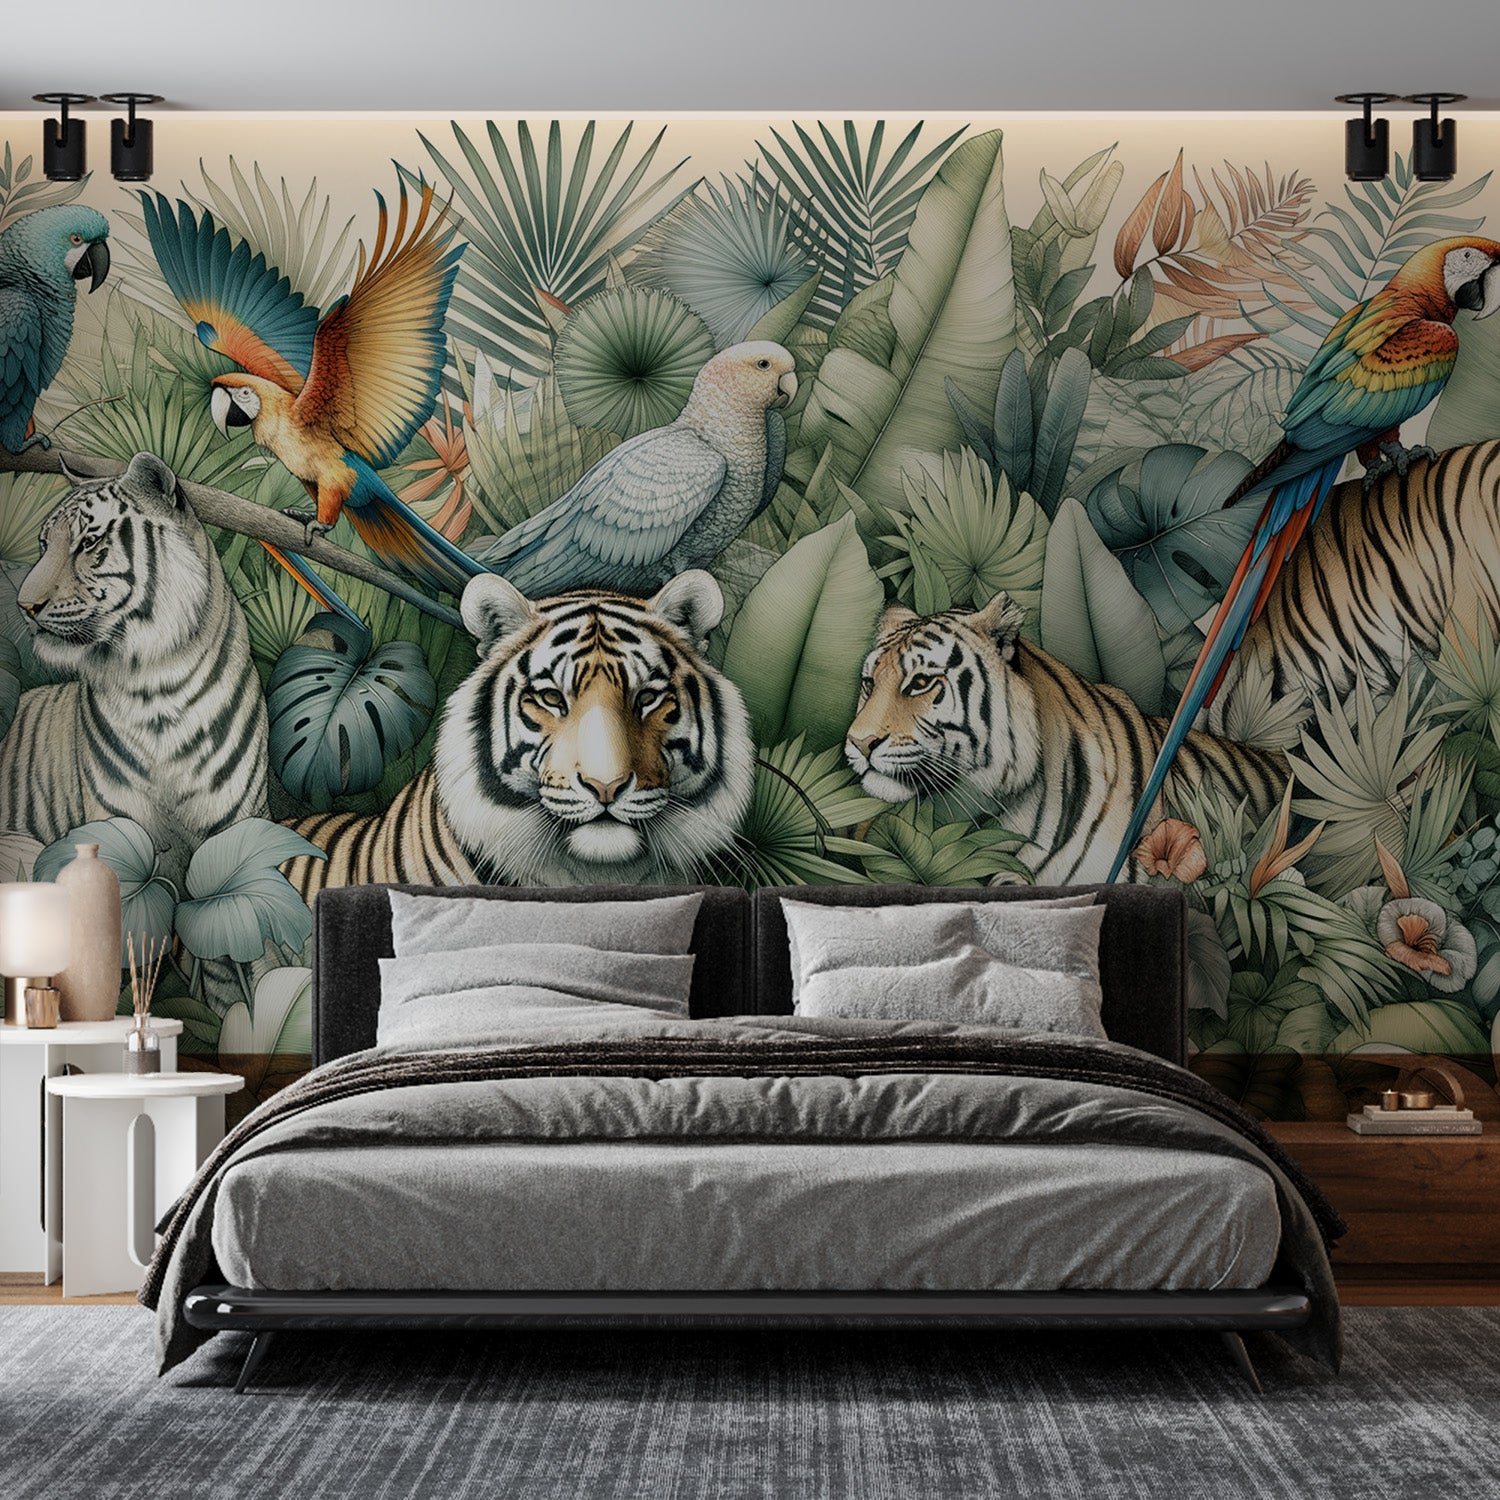  Papier peint jungle Tigres et perroquets parmi la végétation tropicale